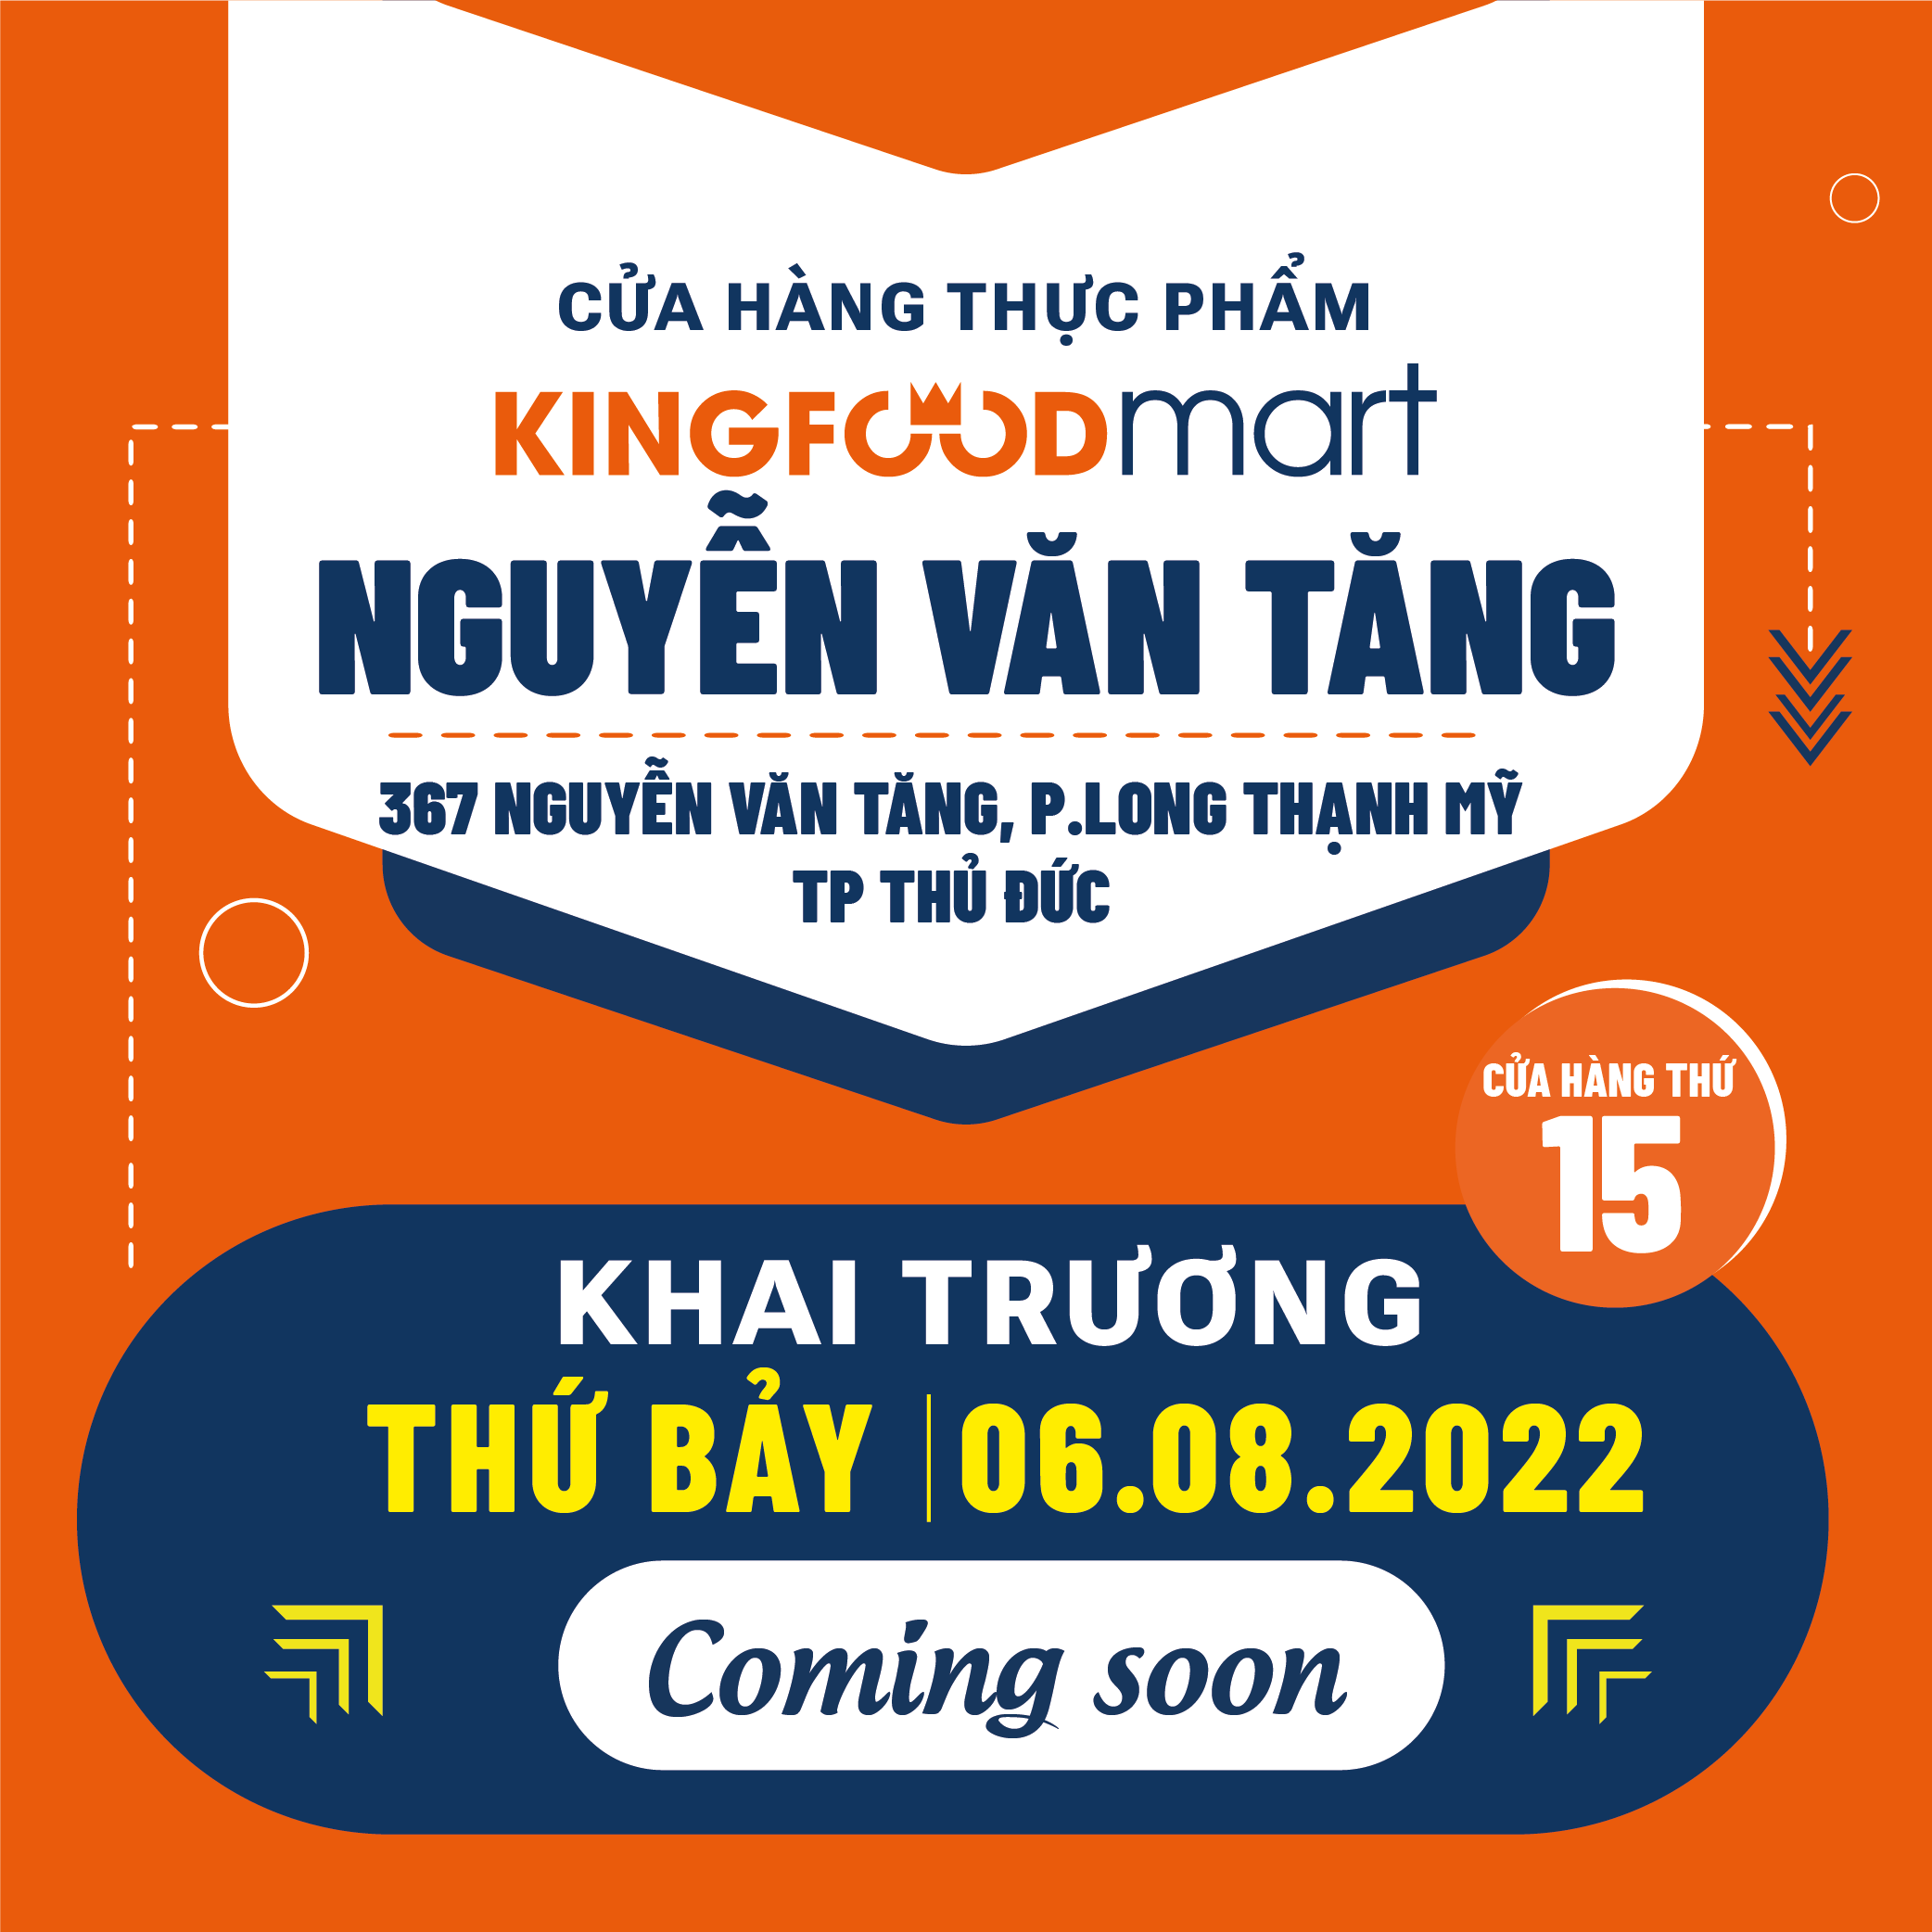 Ưu Đãi Xịn – Mịn Mừng Khai Trương Kingfoodmart Nguyễn Văn Tăng